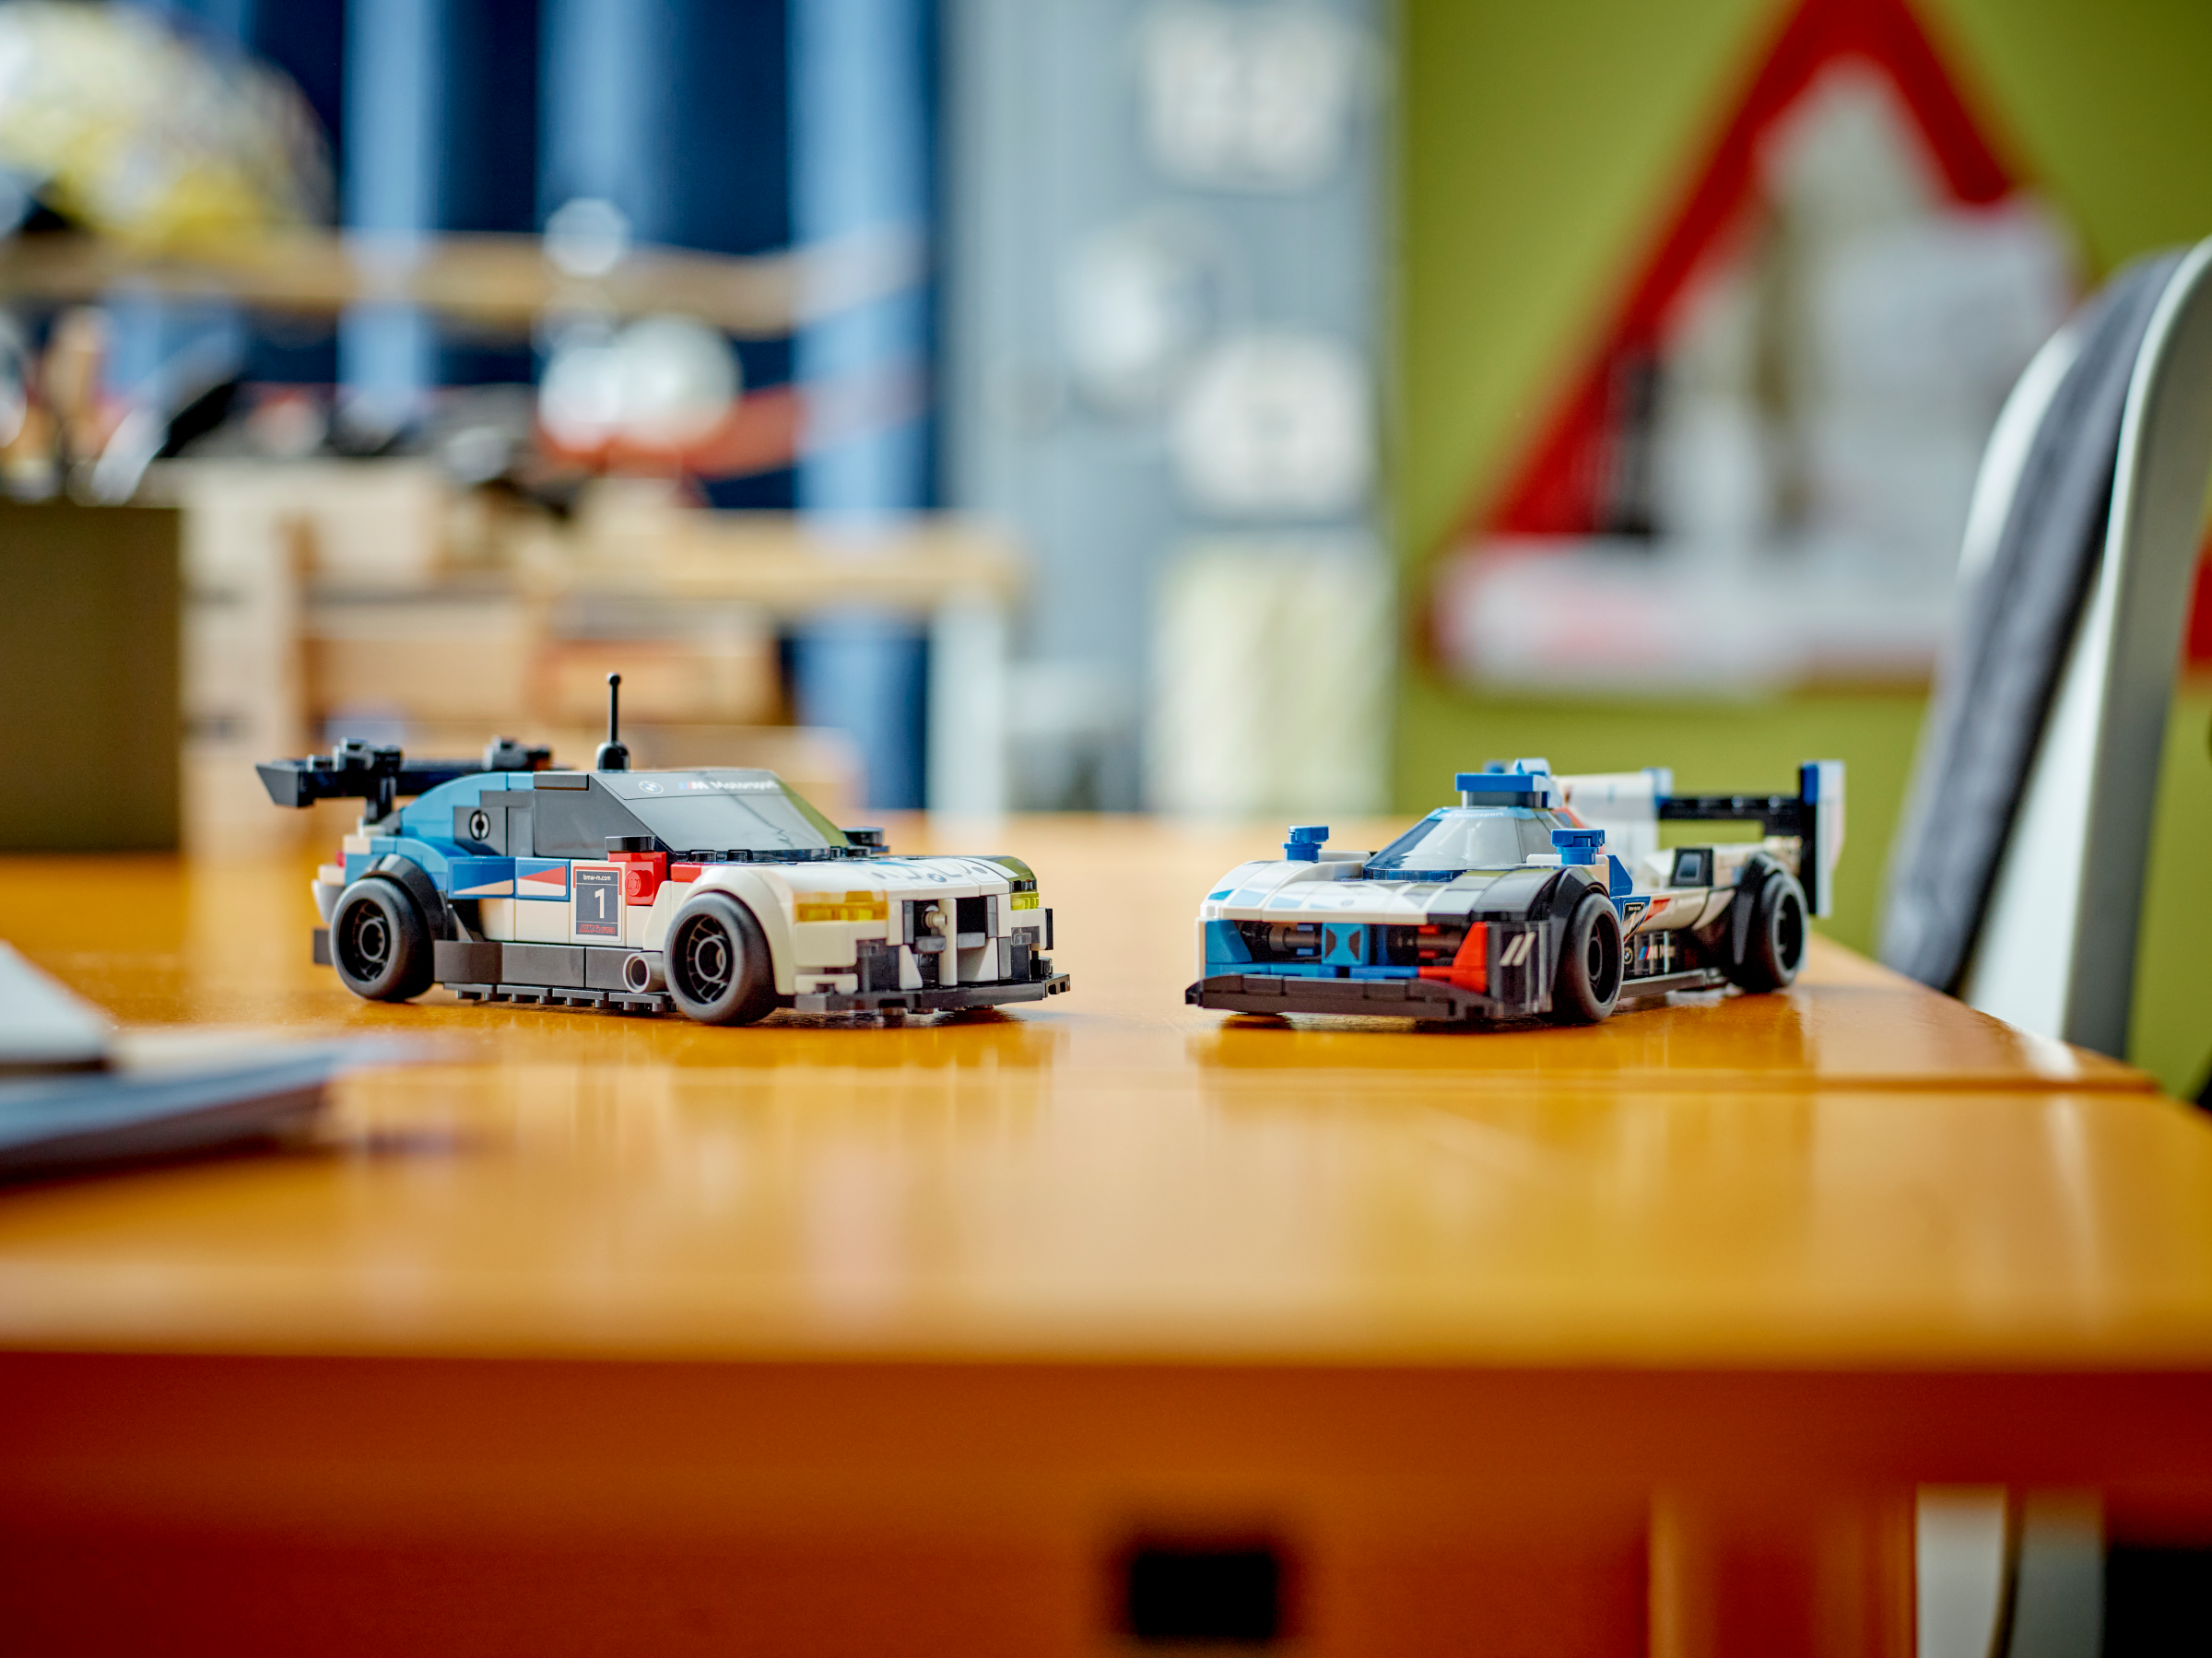 𝑾𝒐𝒓𝒍𝒅𝑾𝒊𝒅𝒆𝑪𝒂𝒓𝒔™ on X: Lego BMW M4 F82   / X